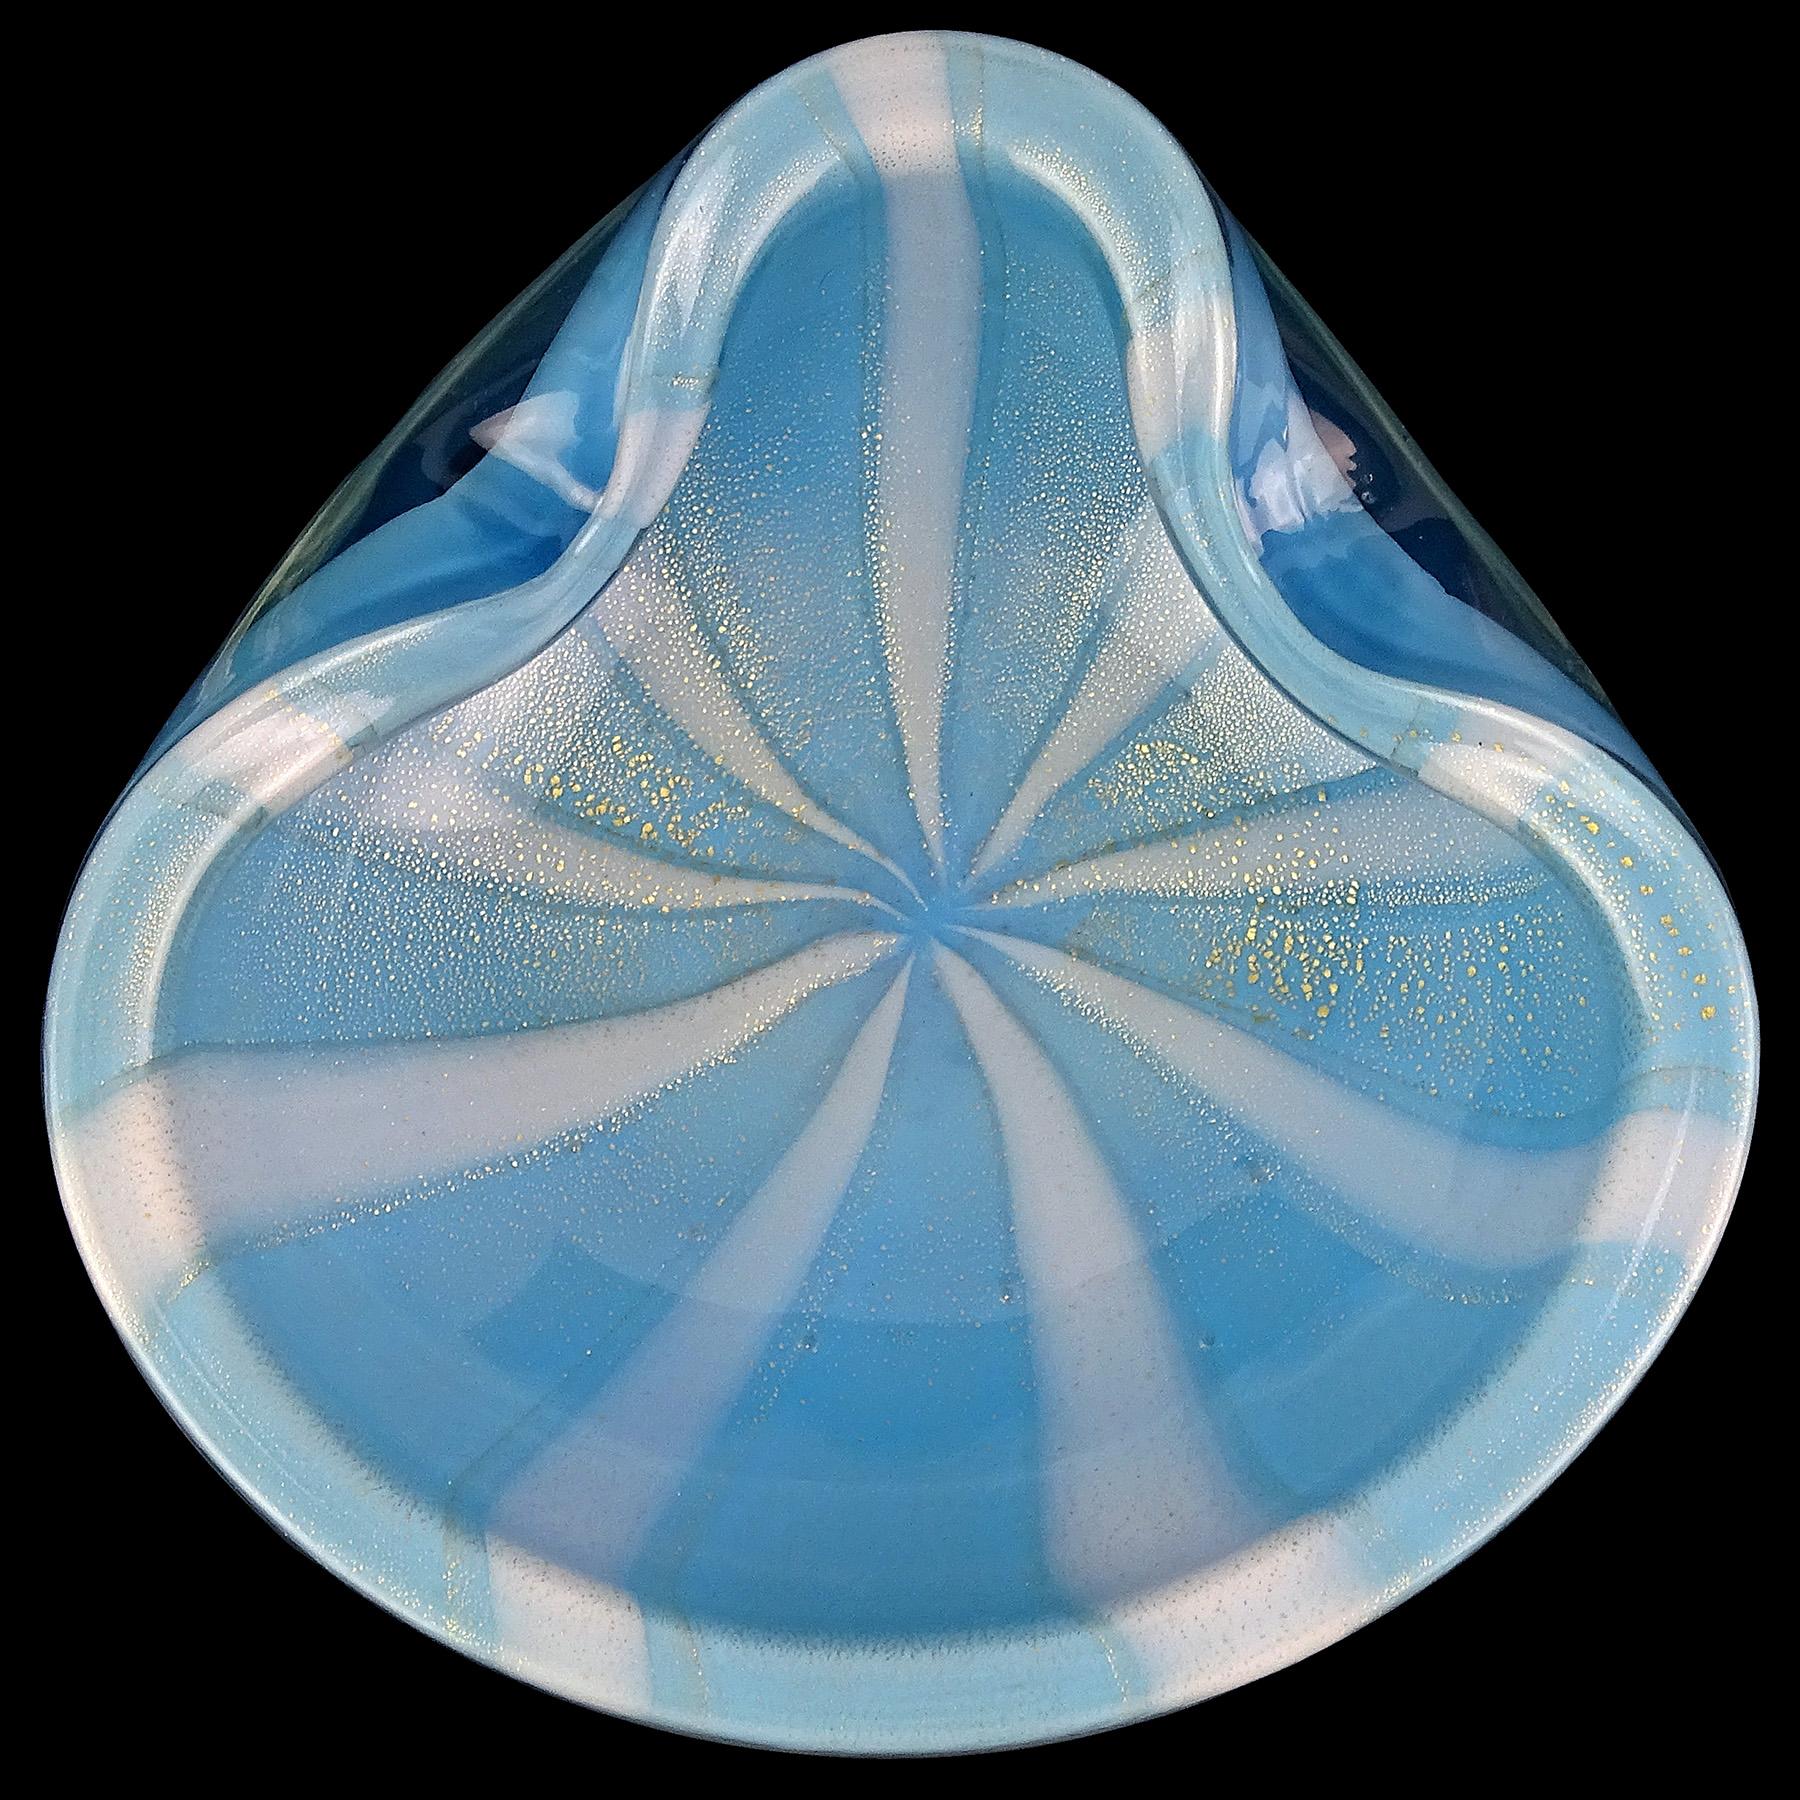 Schöne Vintage Murano mundgeblasenen Himmel blau, weiße Streifen und Goldflecken italienischen Kunstglas dekorative Schale. Dokumentiert für den Meister-Glaskünstler und Designer Alfredo Barbini, ca. 1950er Jahre. Veröffentlicht in seinem Katalog.